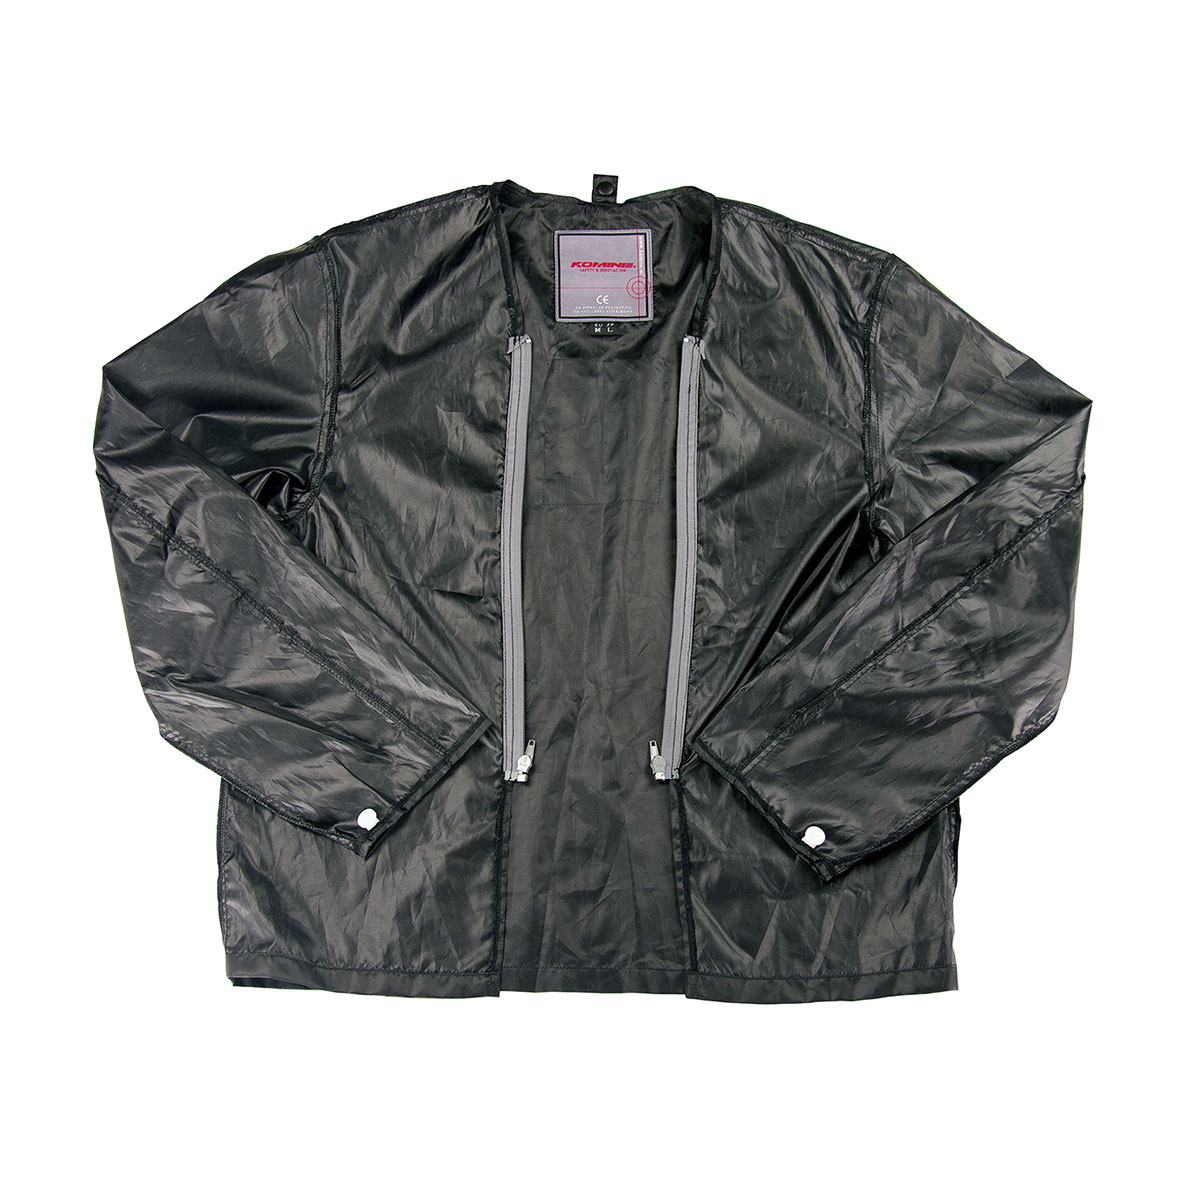  コミネ KOMINE バイク用 ジャケット Jacket JK-051 ウインドプルーフライニングジャケット ブラック 黒 5XLBサイズ 07-051/BK/5XLB